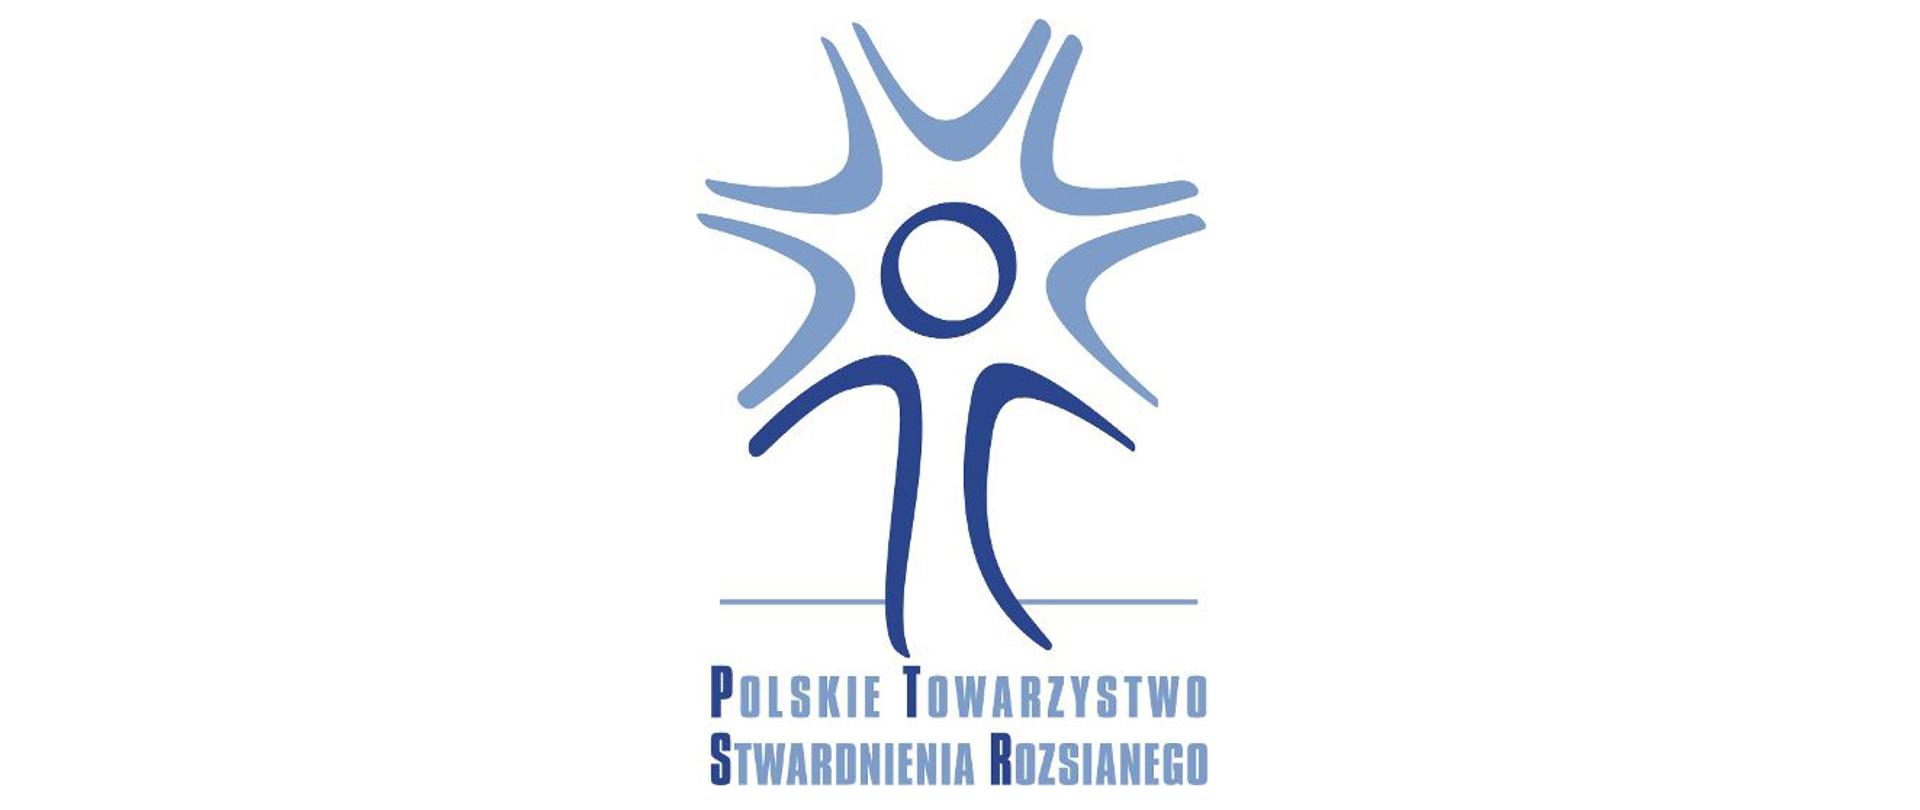 PTSR Polskie Towarzystwo Stwardnienia Rozsianego